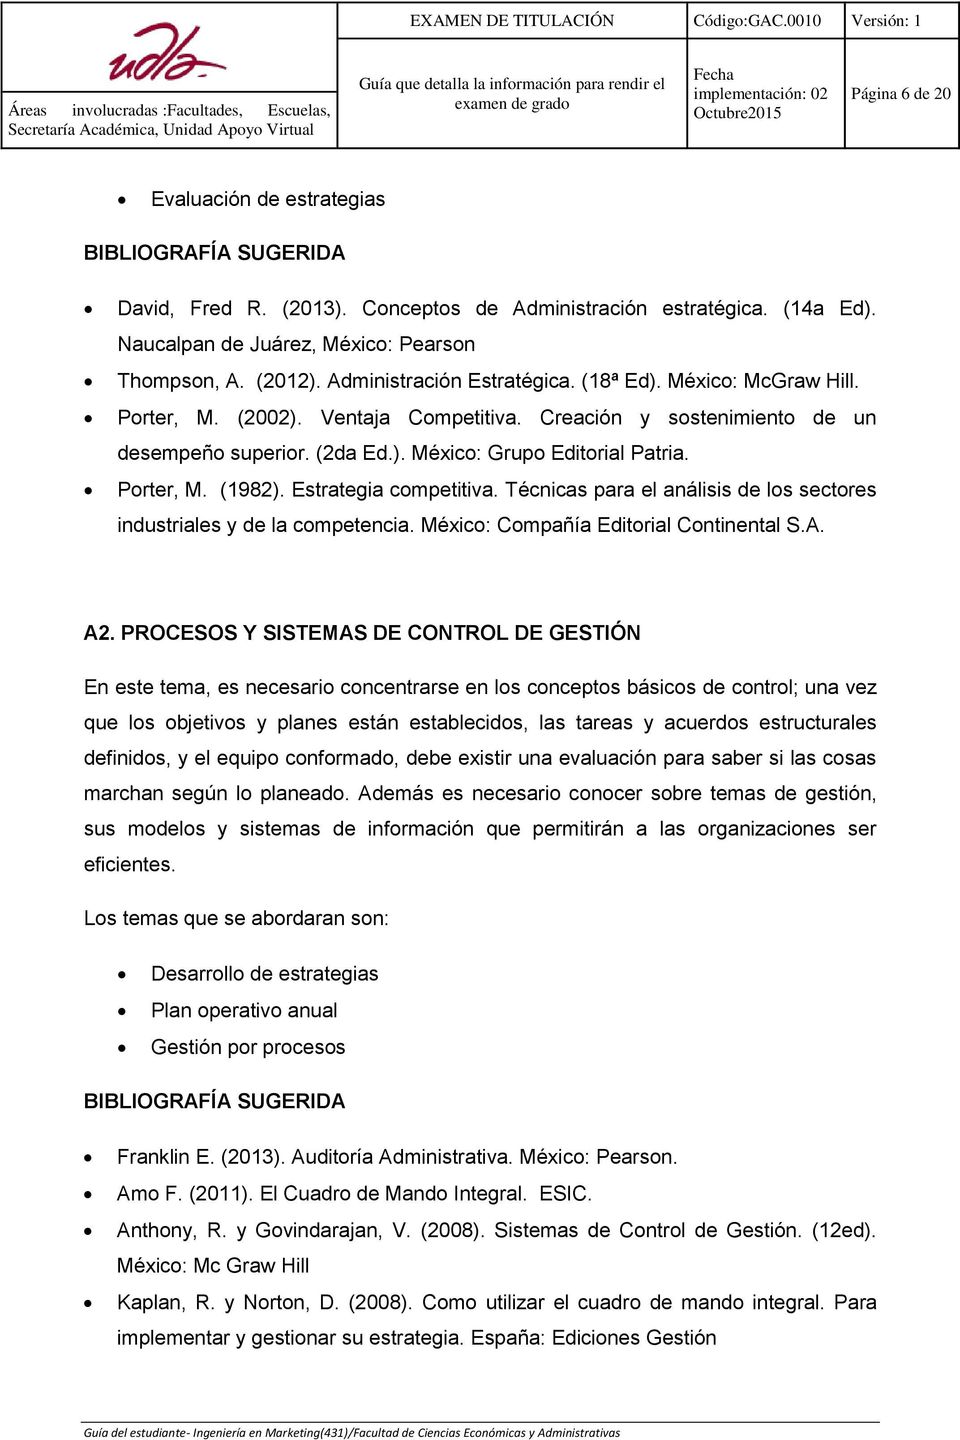 Estrategia competitiva. Técnicas para el análisis de los sectores industriales y de la competencia. México: Compañía Editorial Continental S.A. A2.